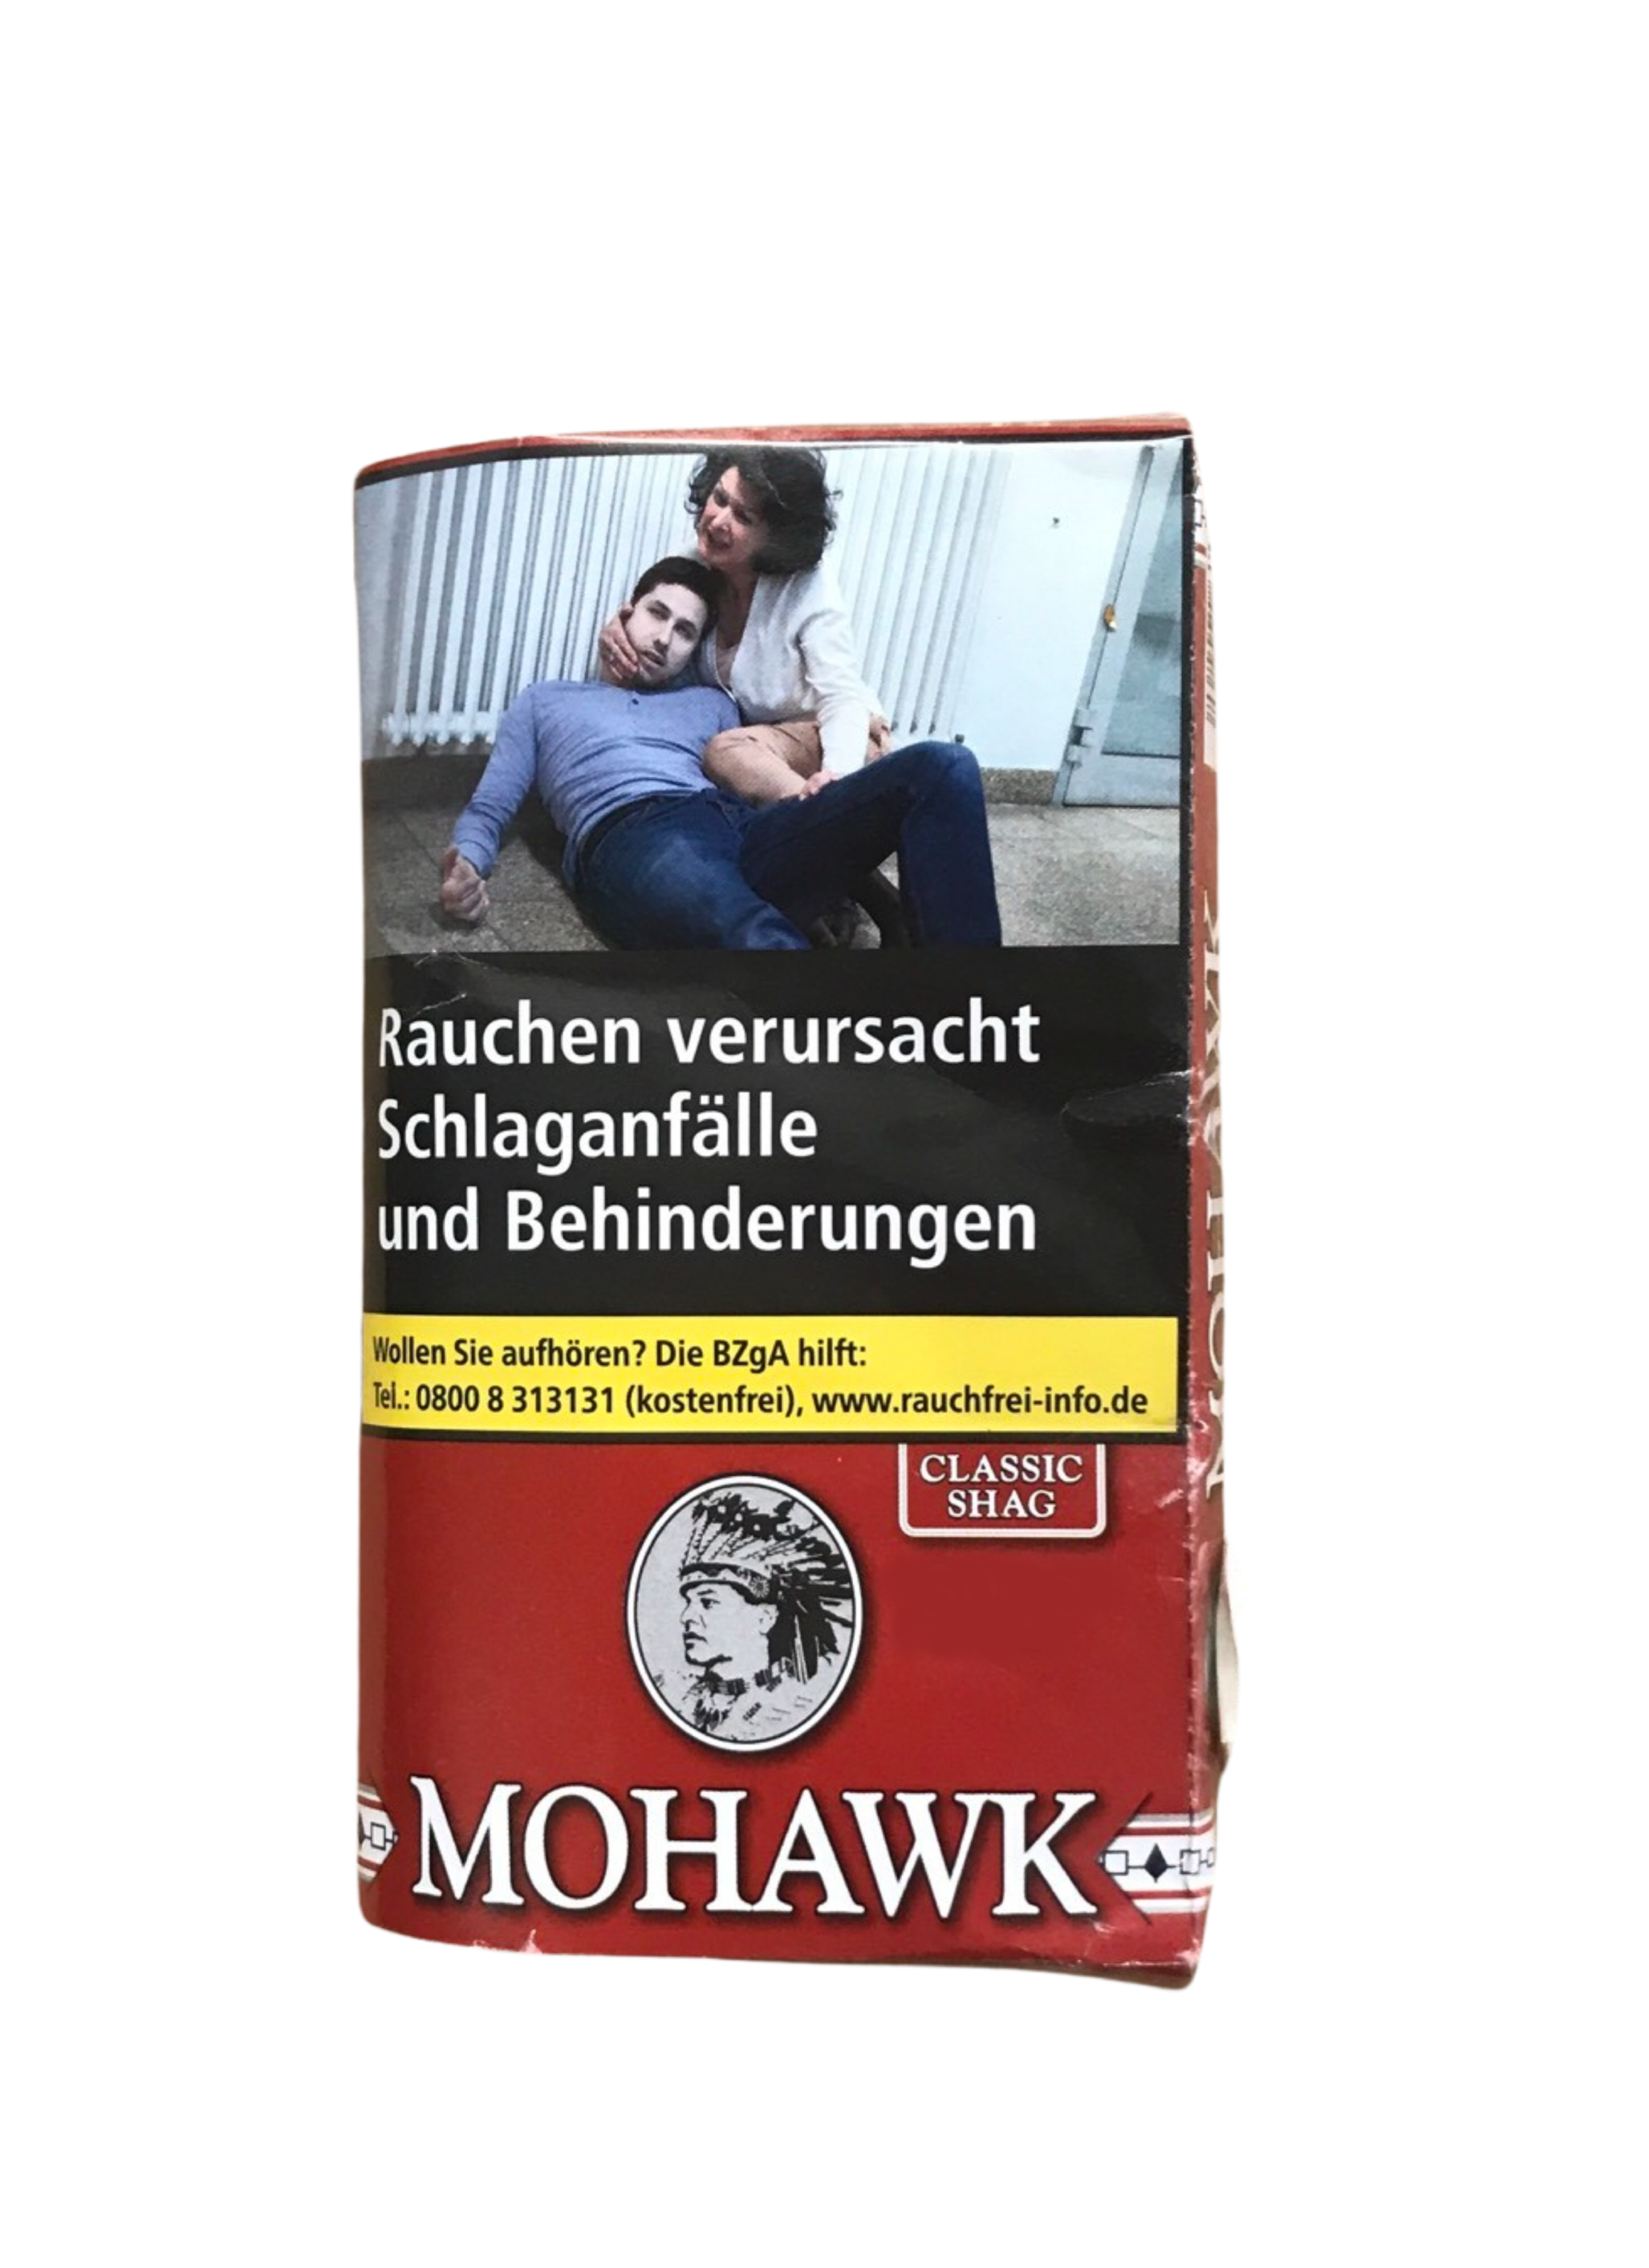 MOHAWK Classic Shag (10)